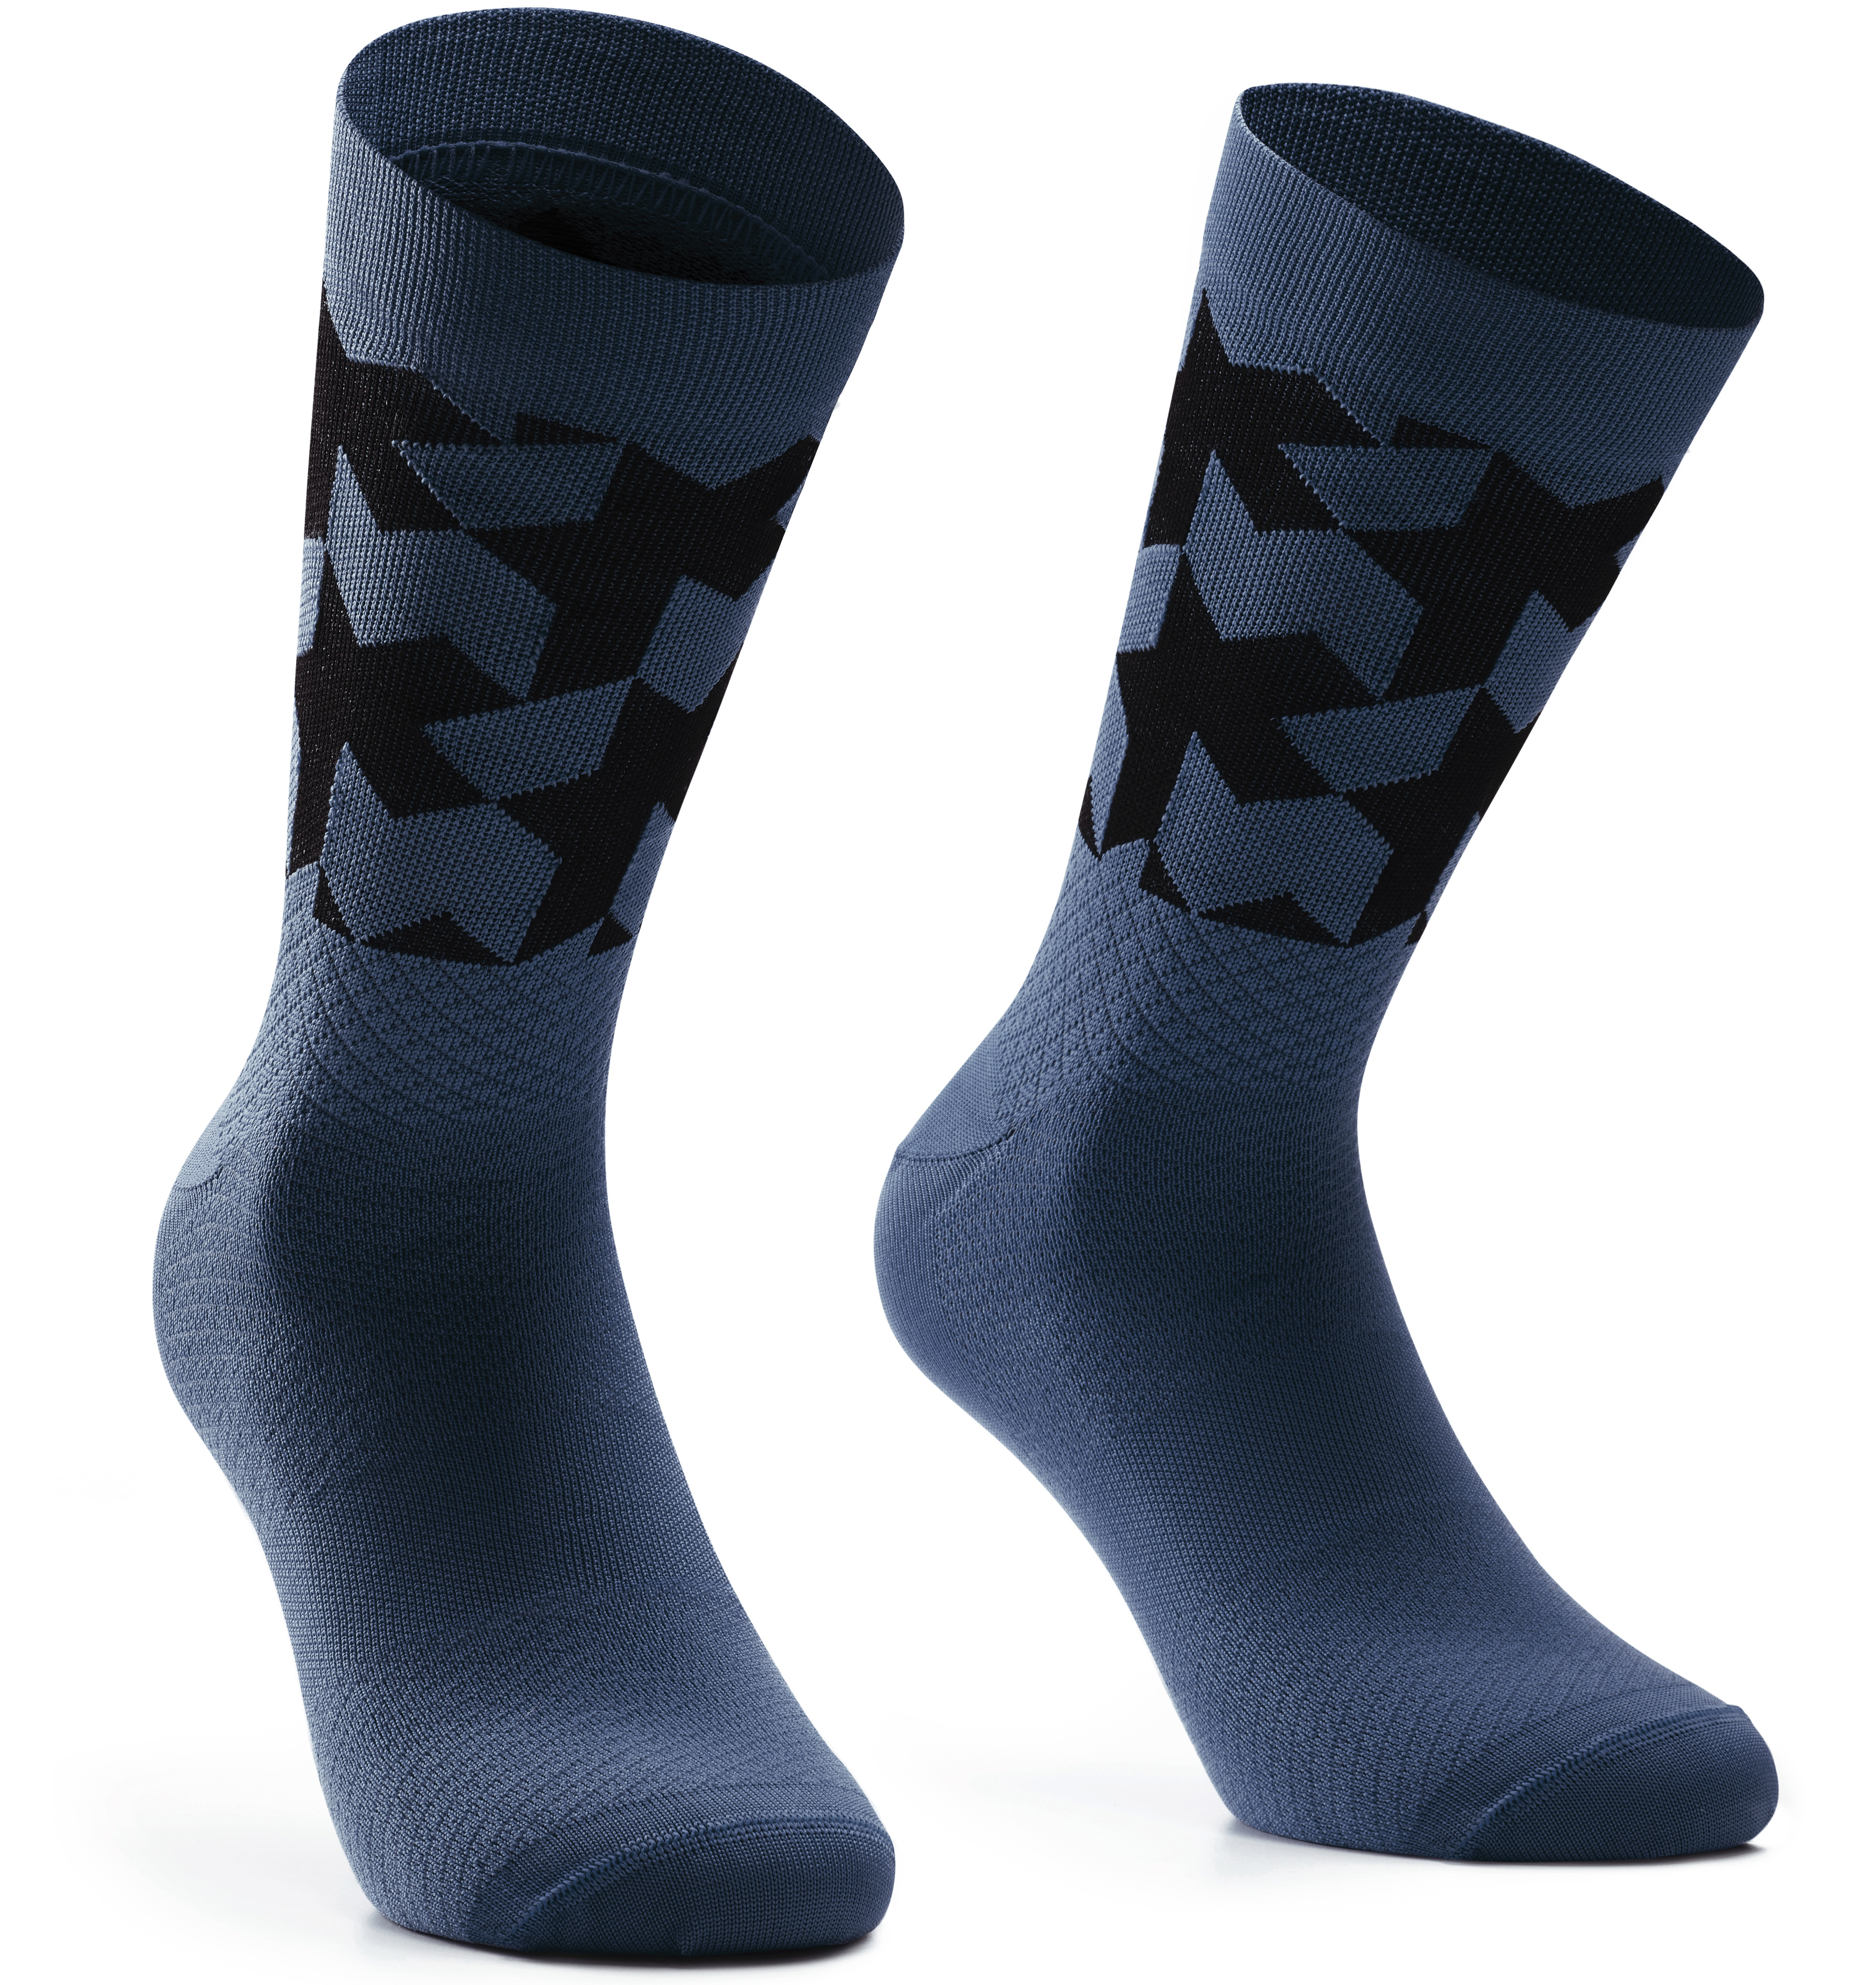 Носки ASSOS Monogram Socks Evo, мужские, сине-черные, I/39-42